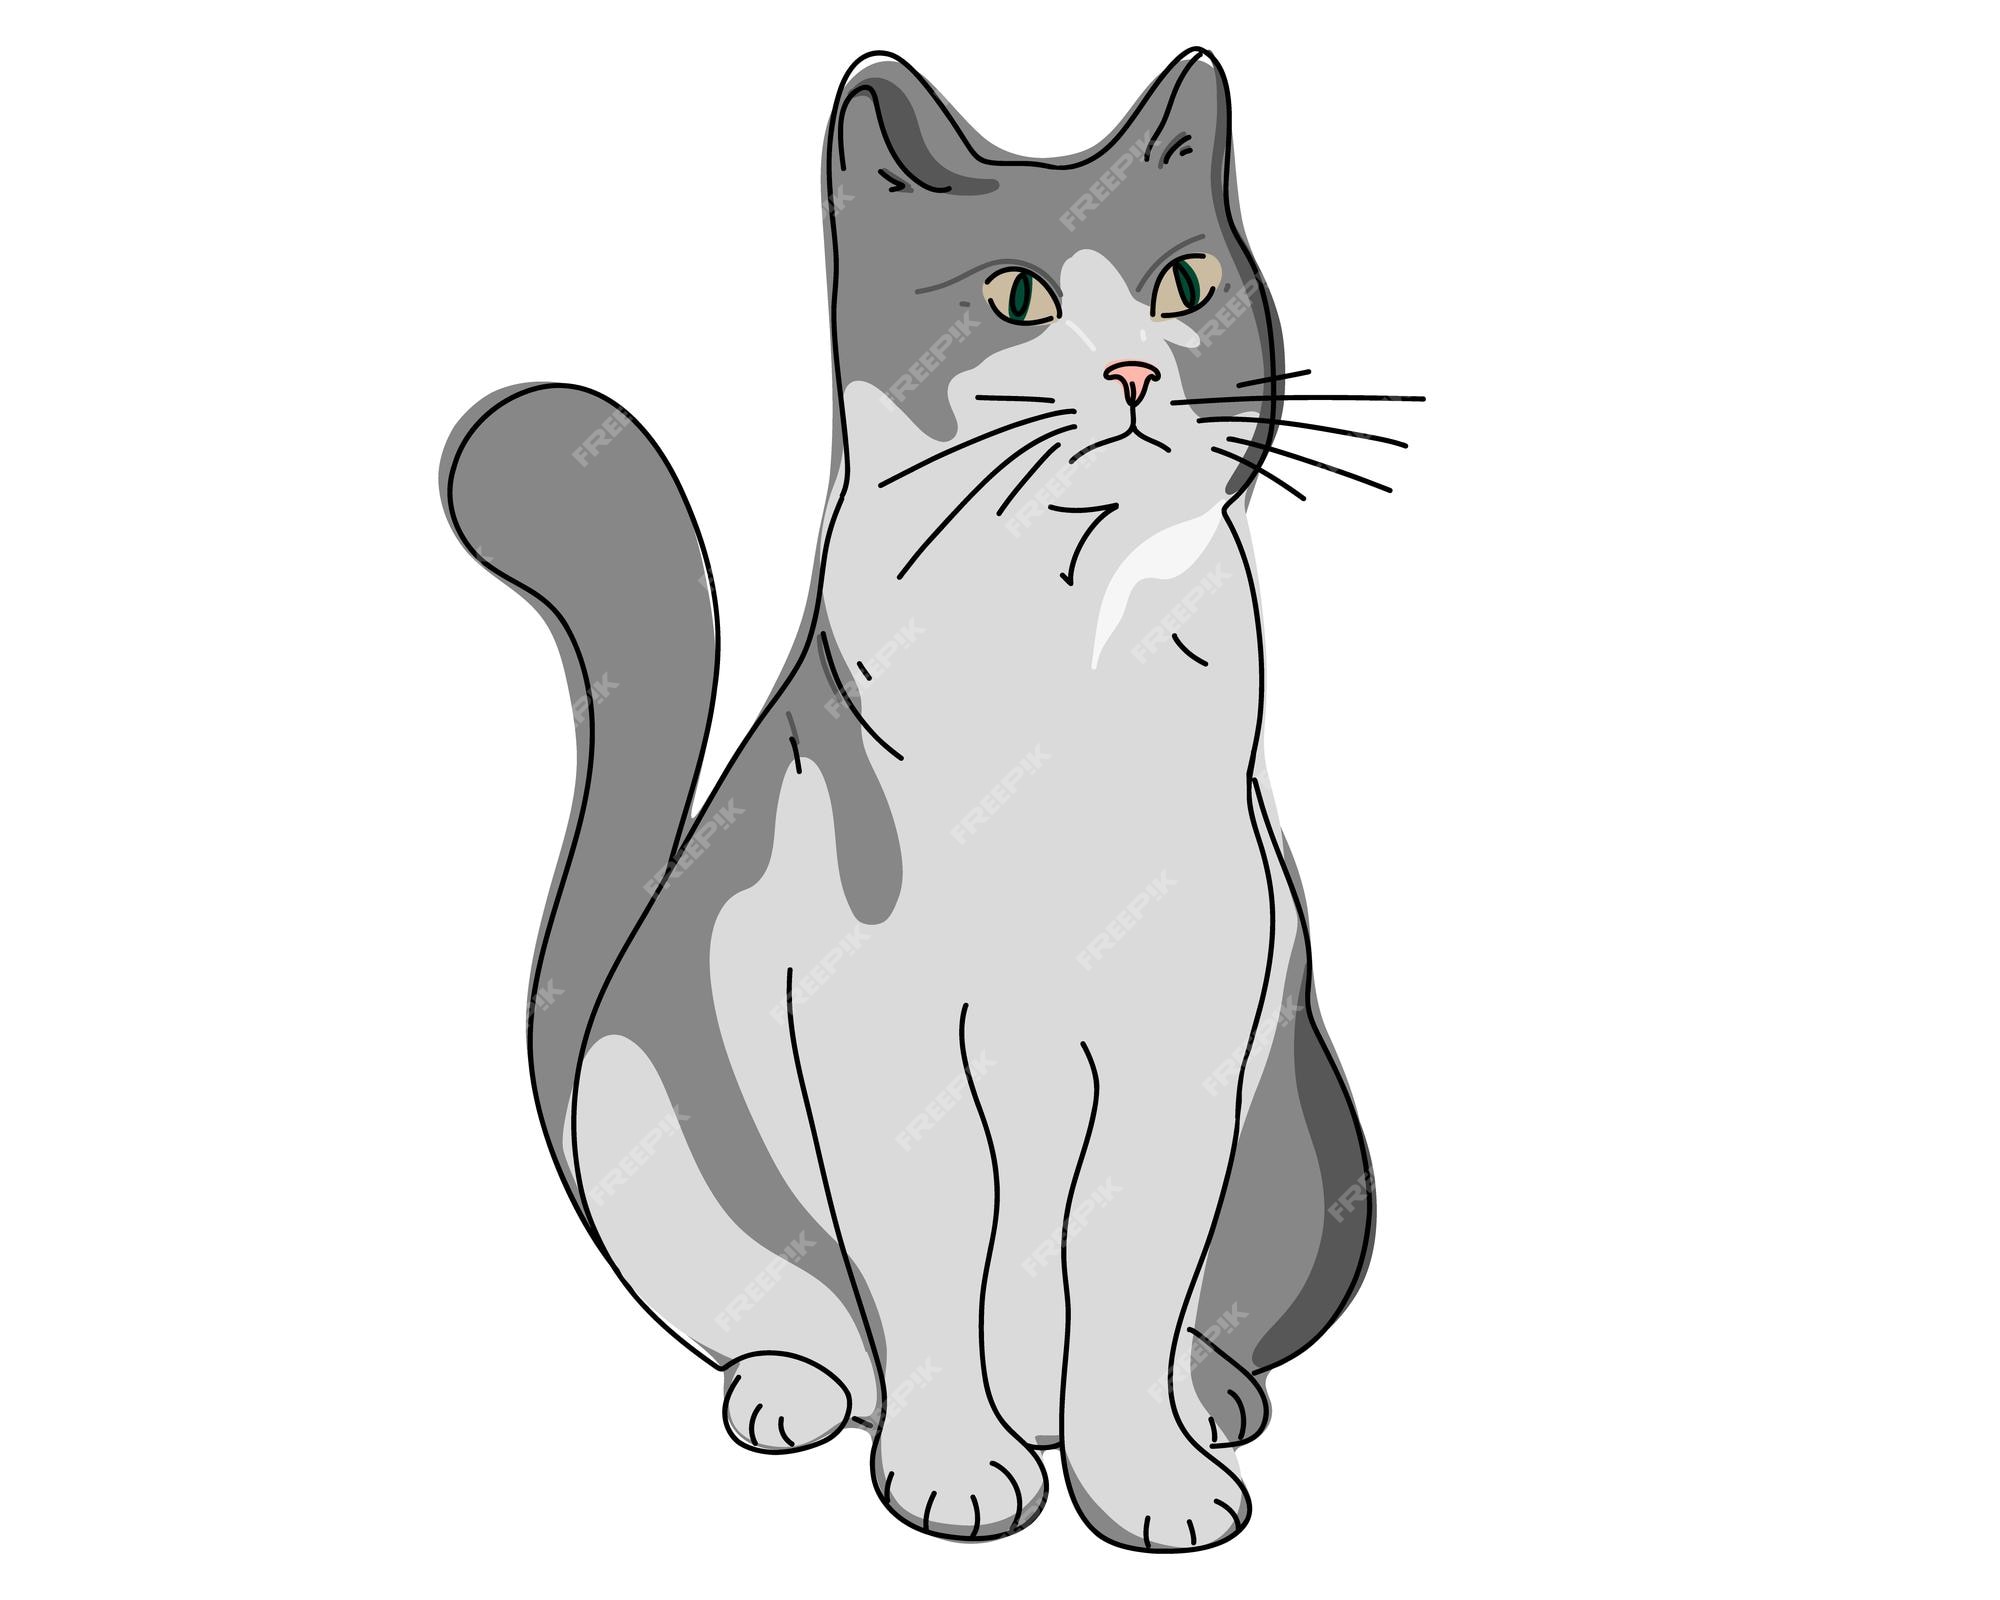 Desenho mínimo do gato imagem vetorial de Sudowoodo© 179286326